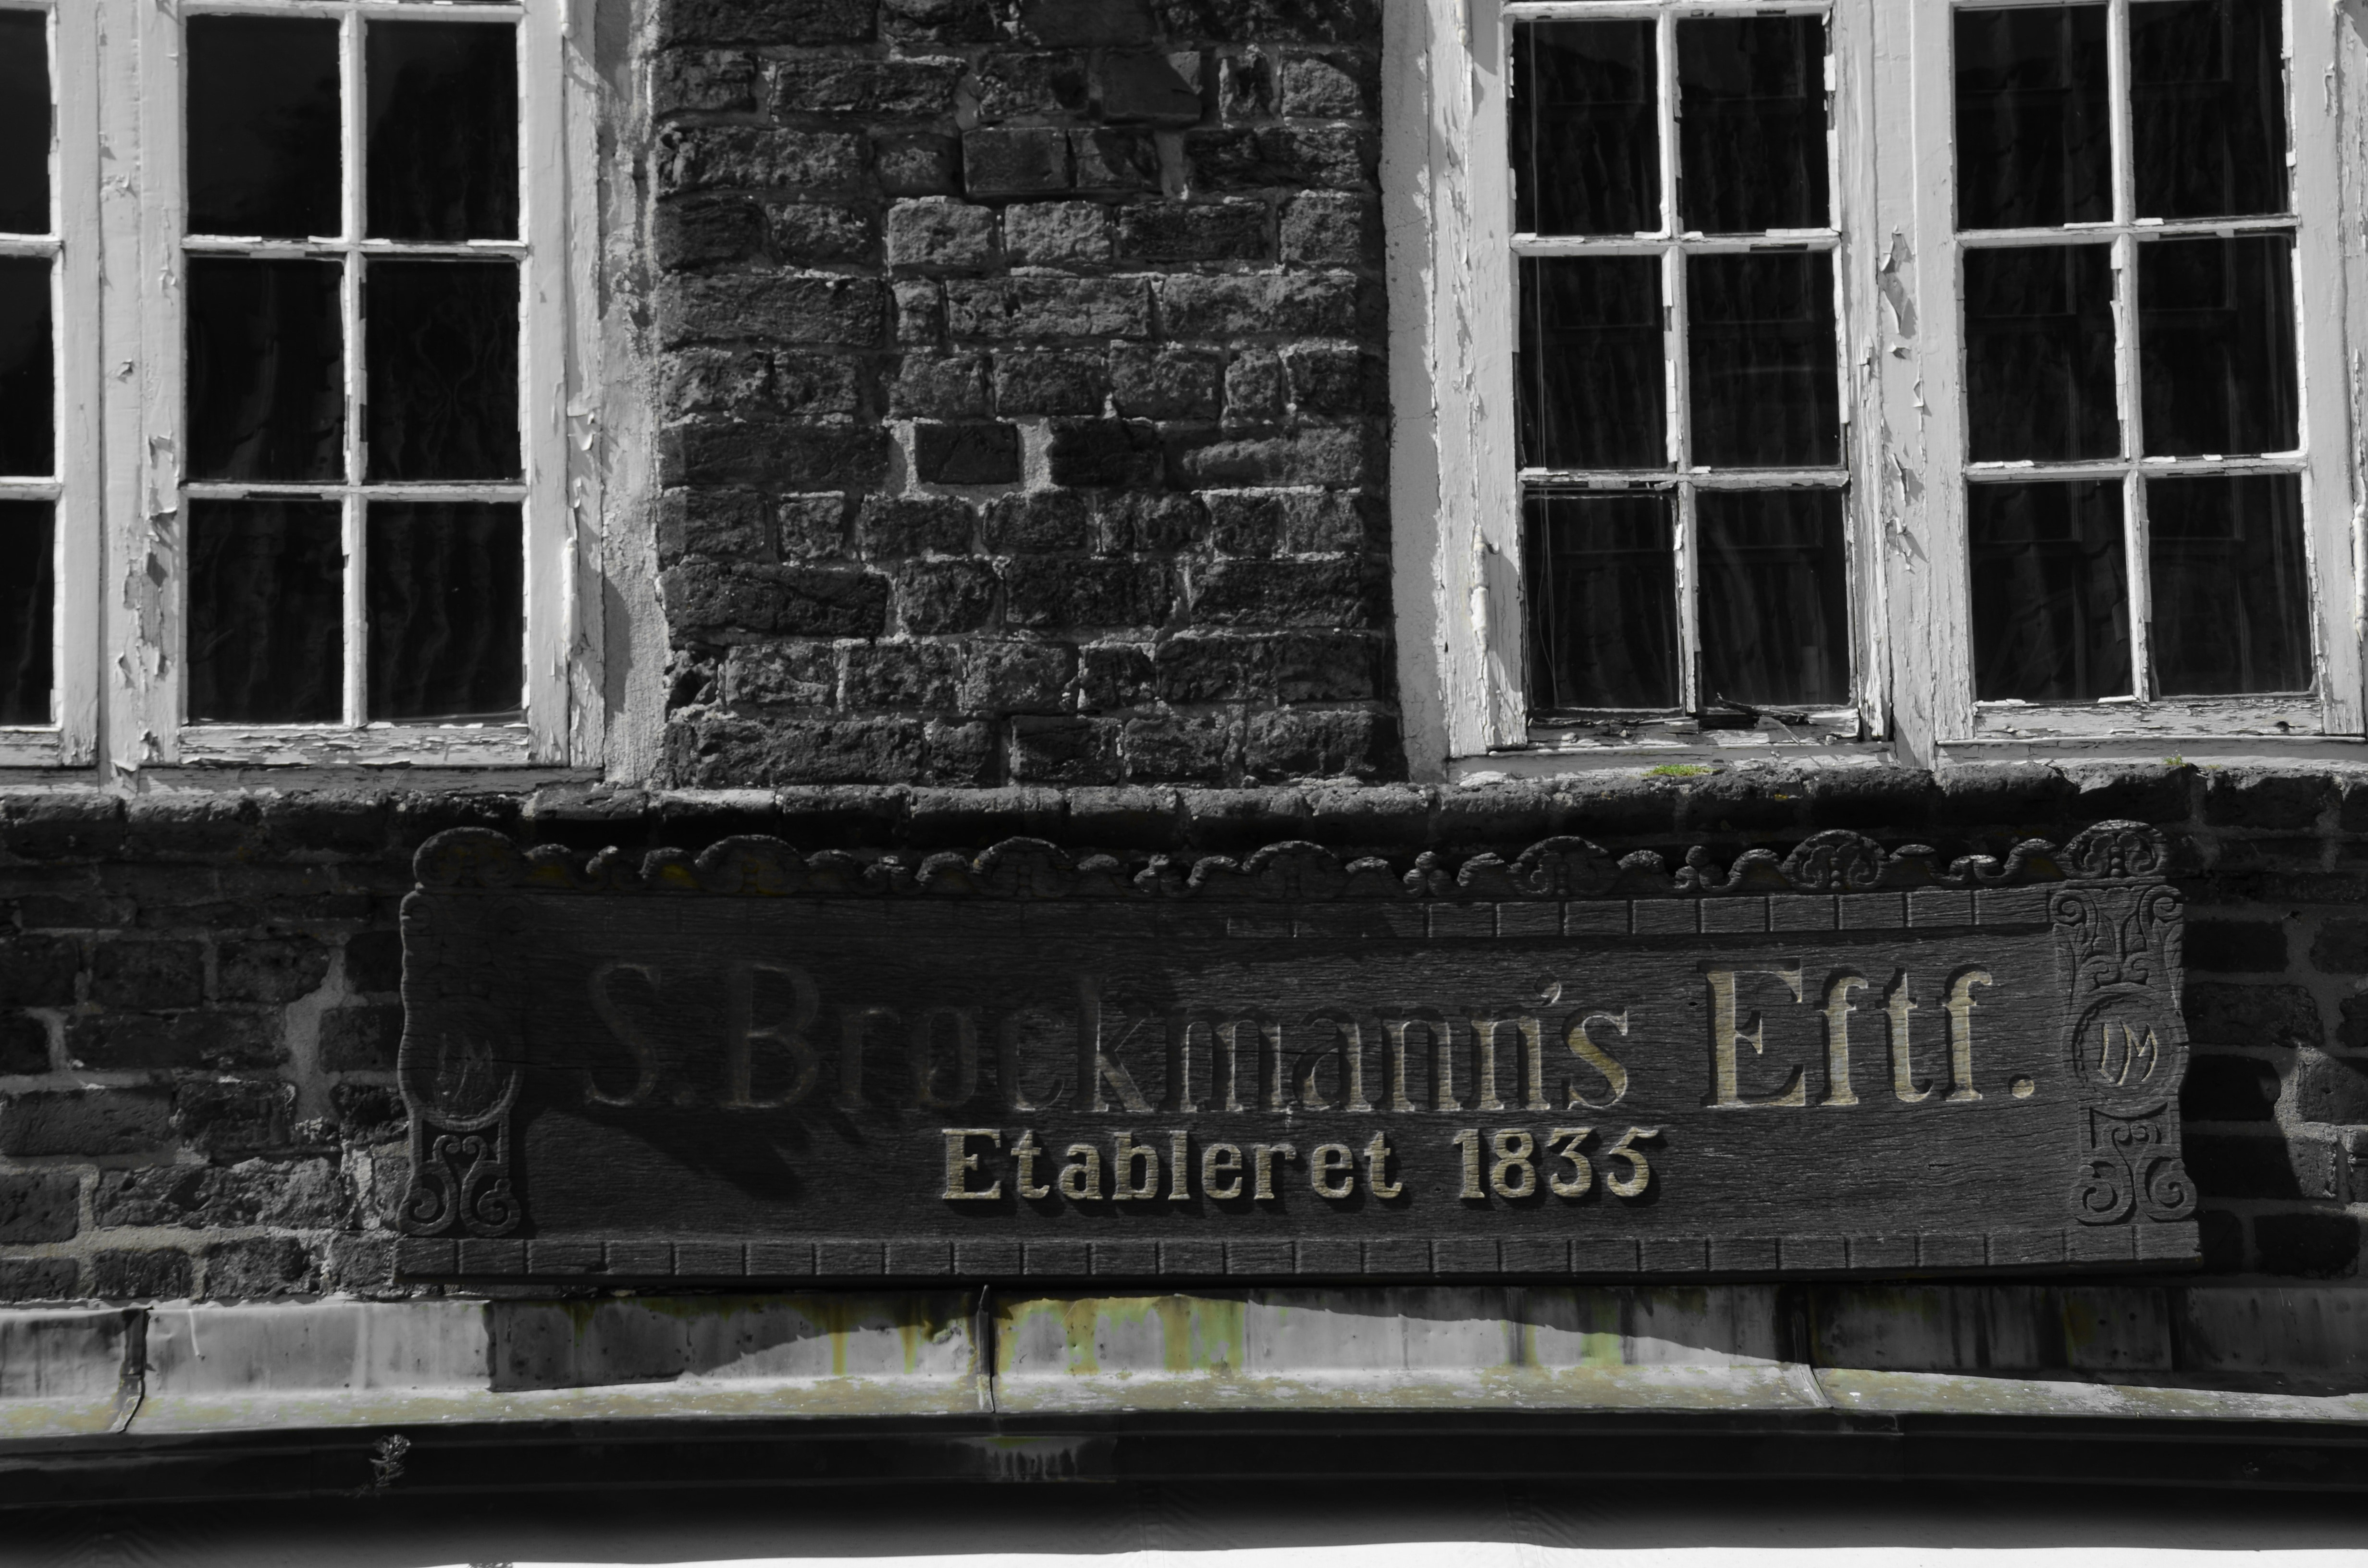 1835 S brookmann's Eftf. etableret sign